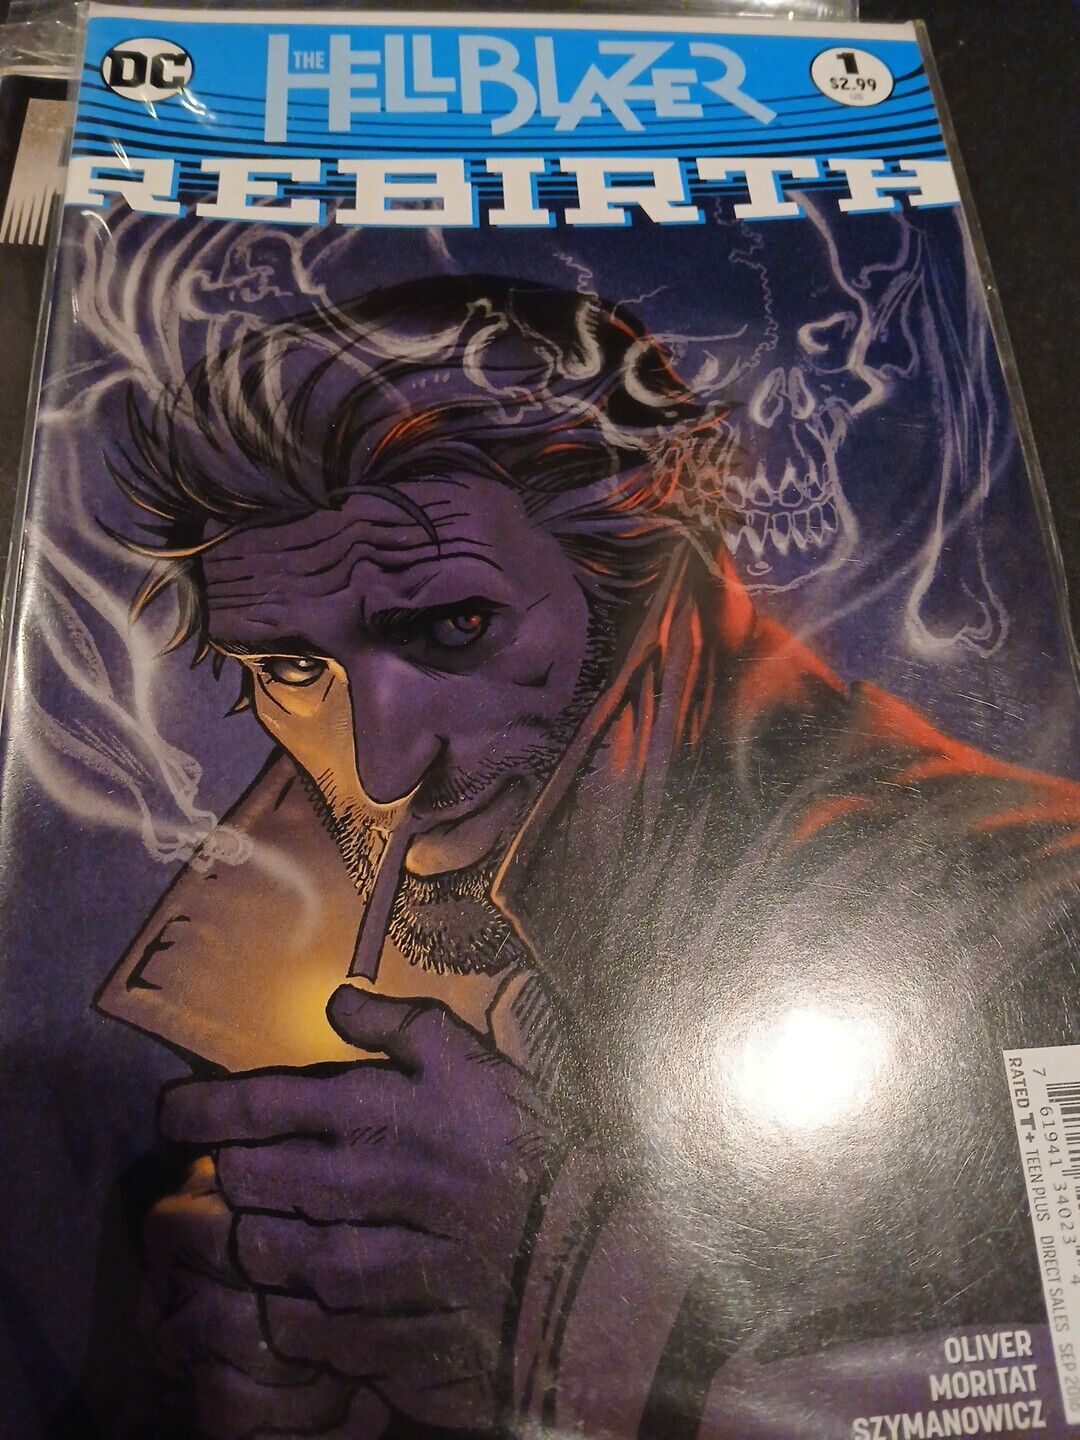 Hellblazer: Rebirth #1 - Sep 2016 - DC Comics - 9.0 VF/NM